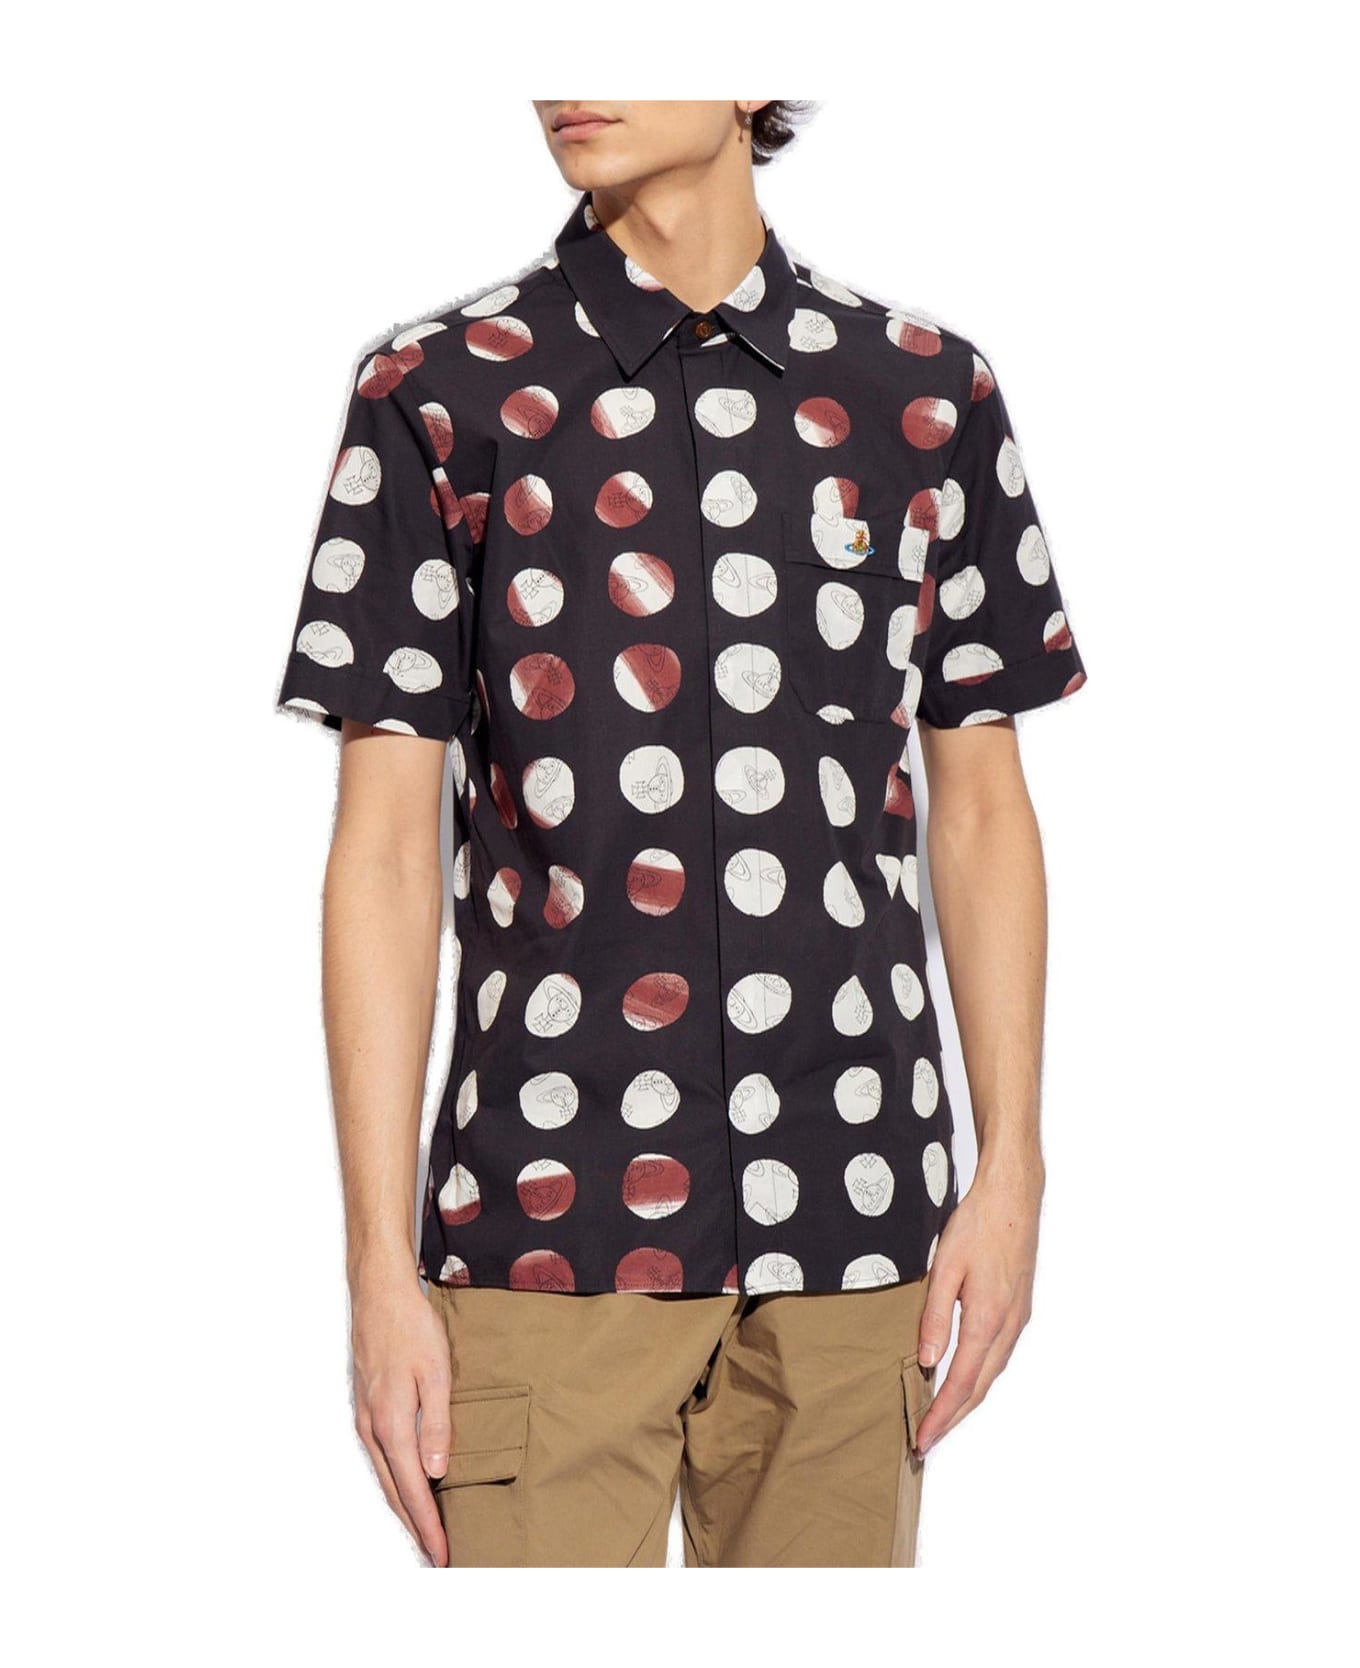 Vivienne Westwood Orb Print Long-sleeved Shirt - Dots Orbs シャツ